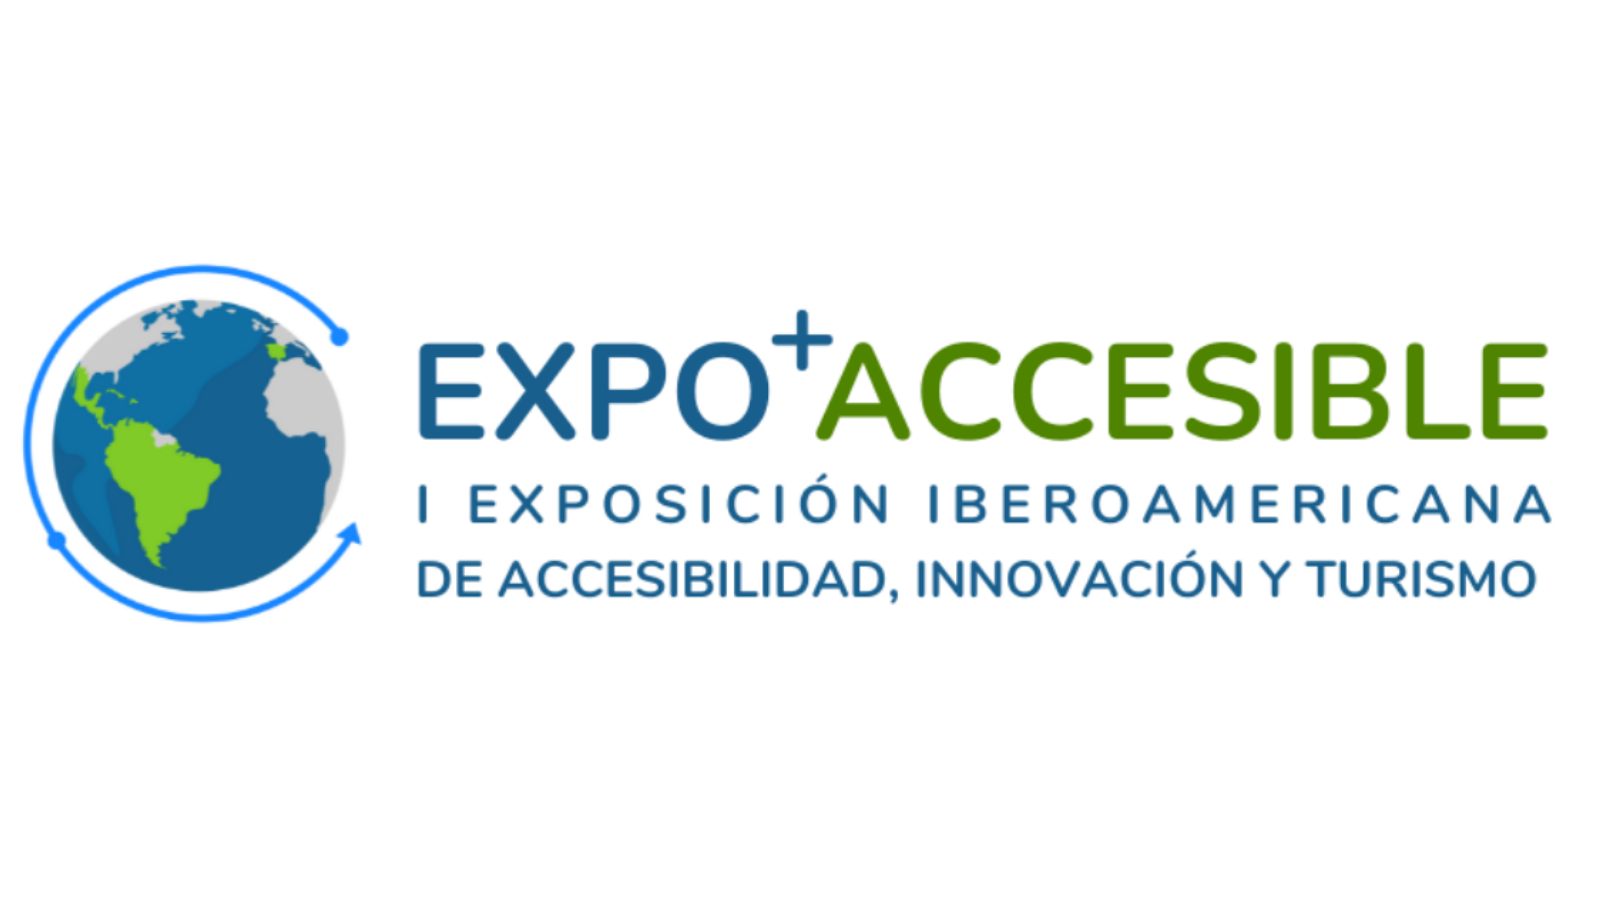 Cartel de Expo Accesible, con el logo compuesto por un globo terráqueo y letras en colores verde y azul